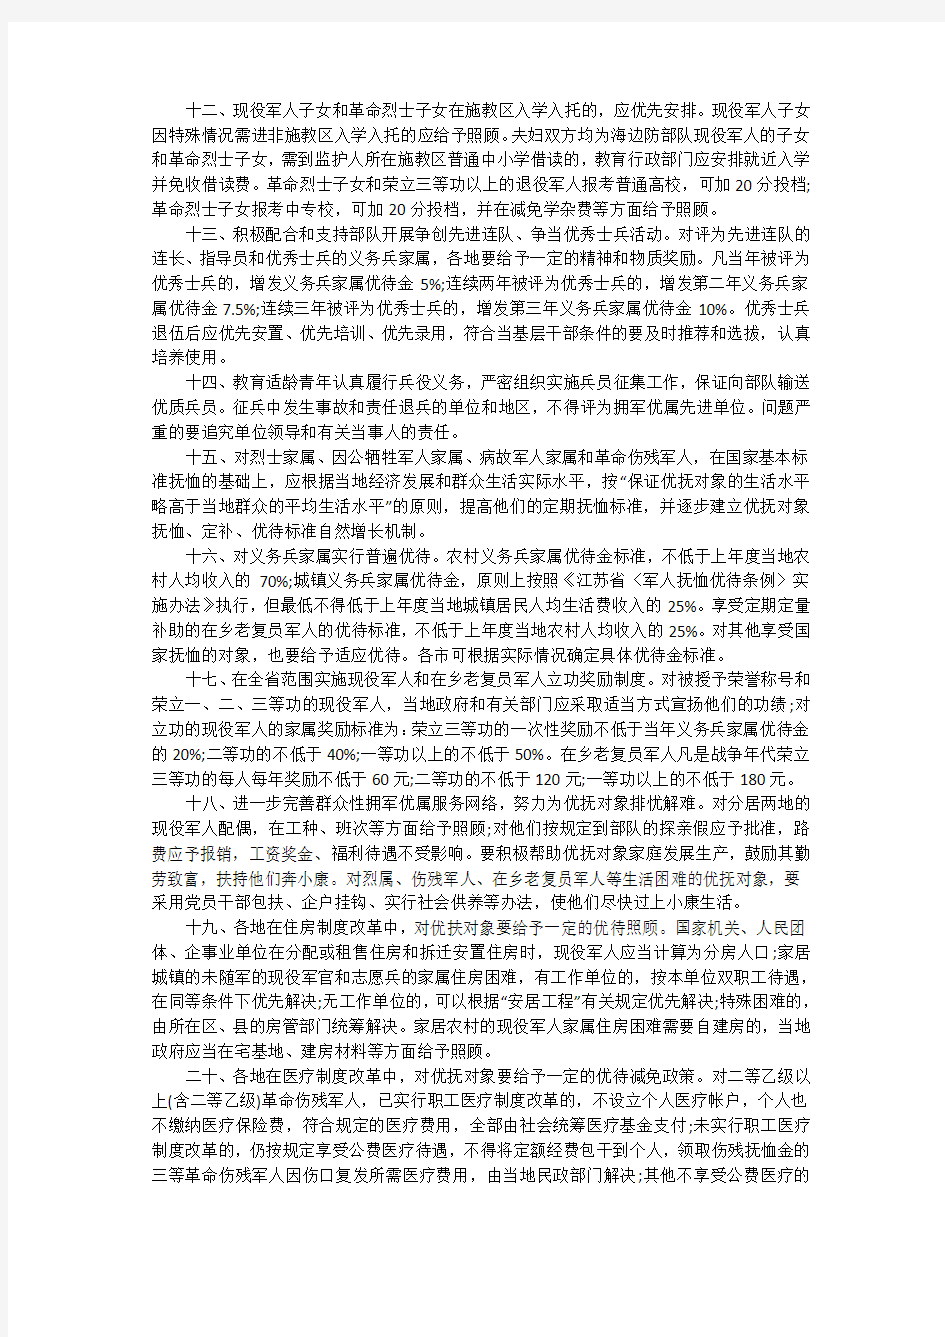 2020年江苏省拥军优属条例(全文)